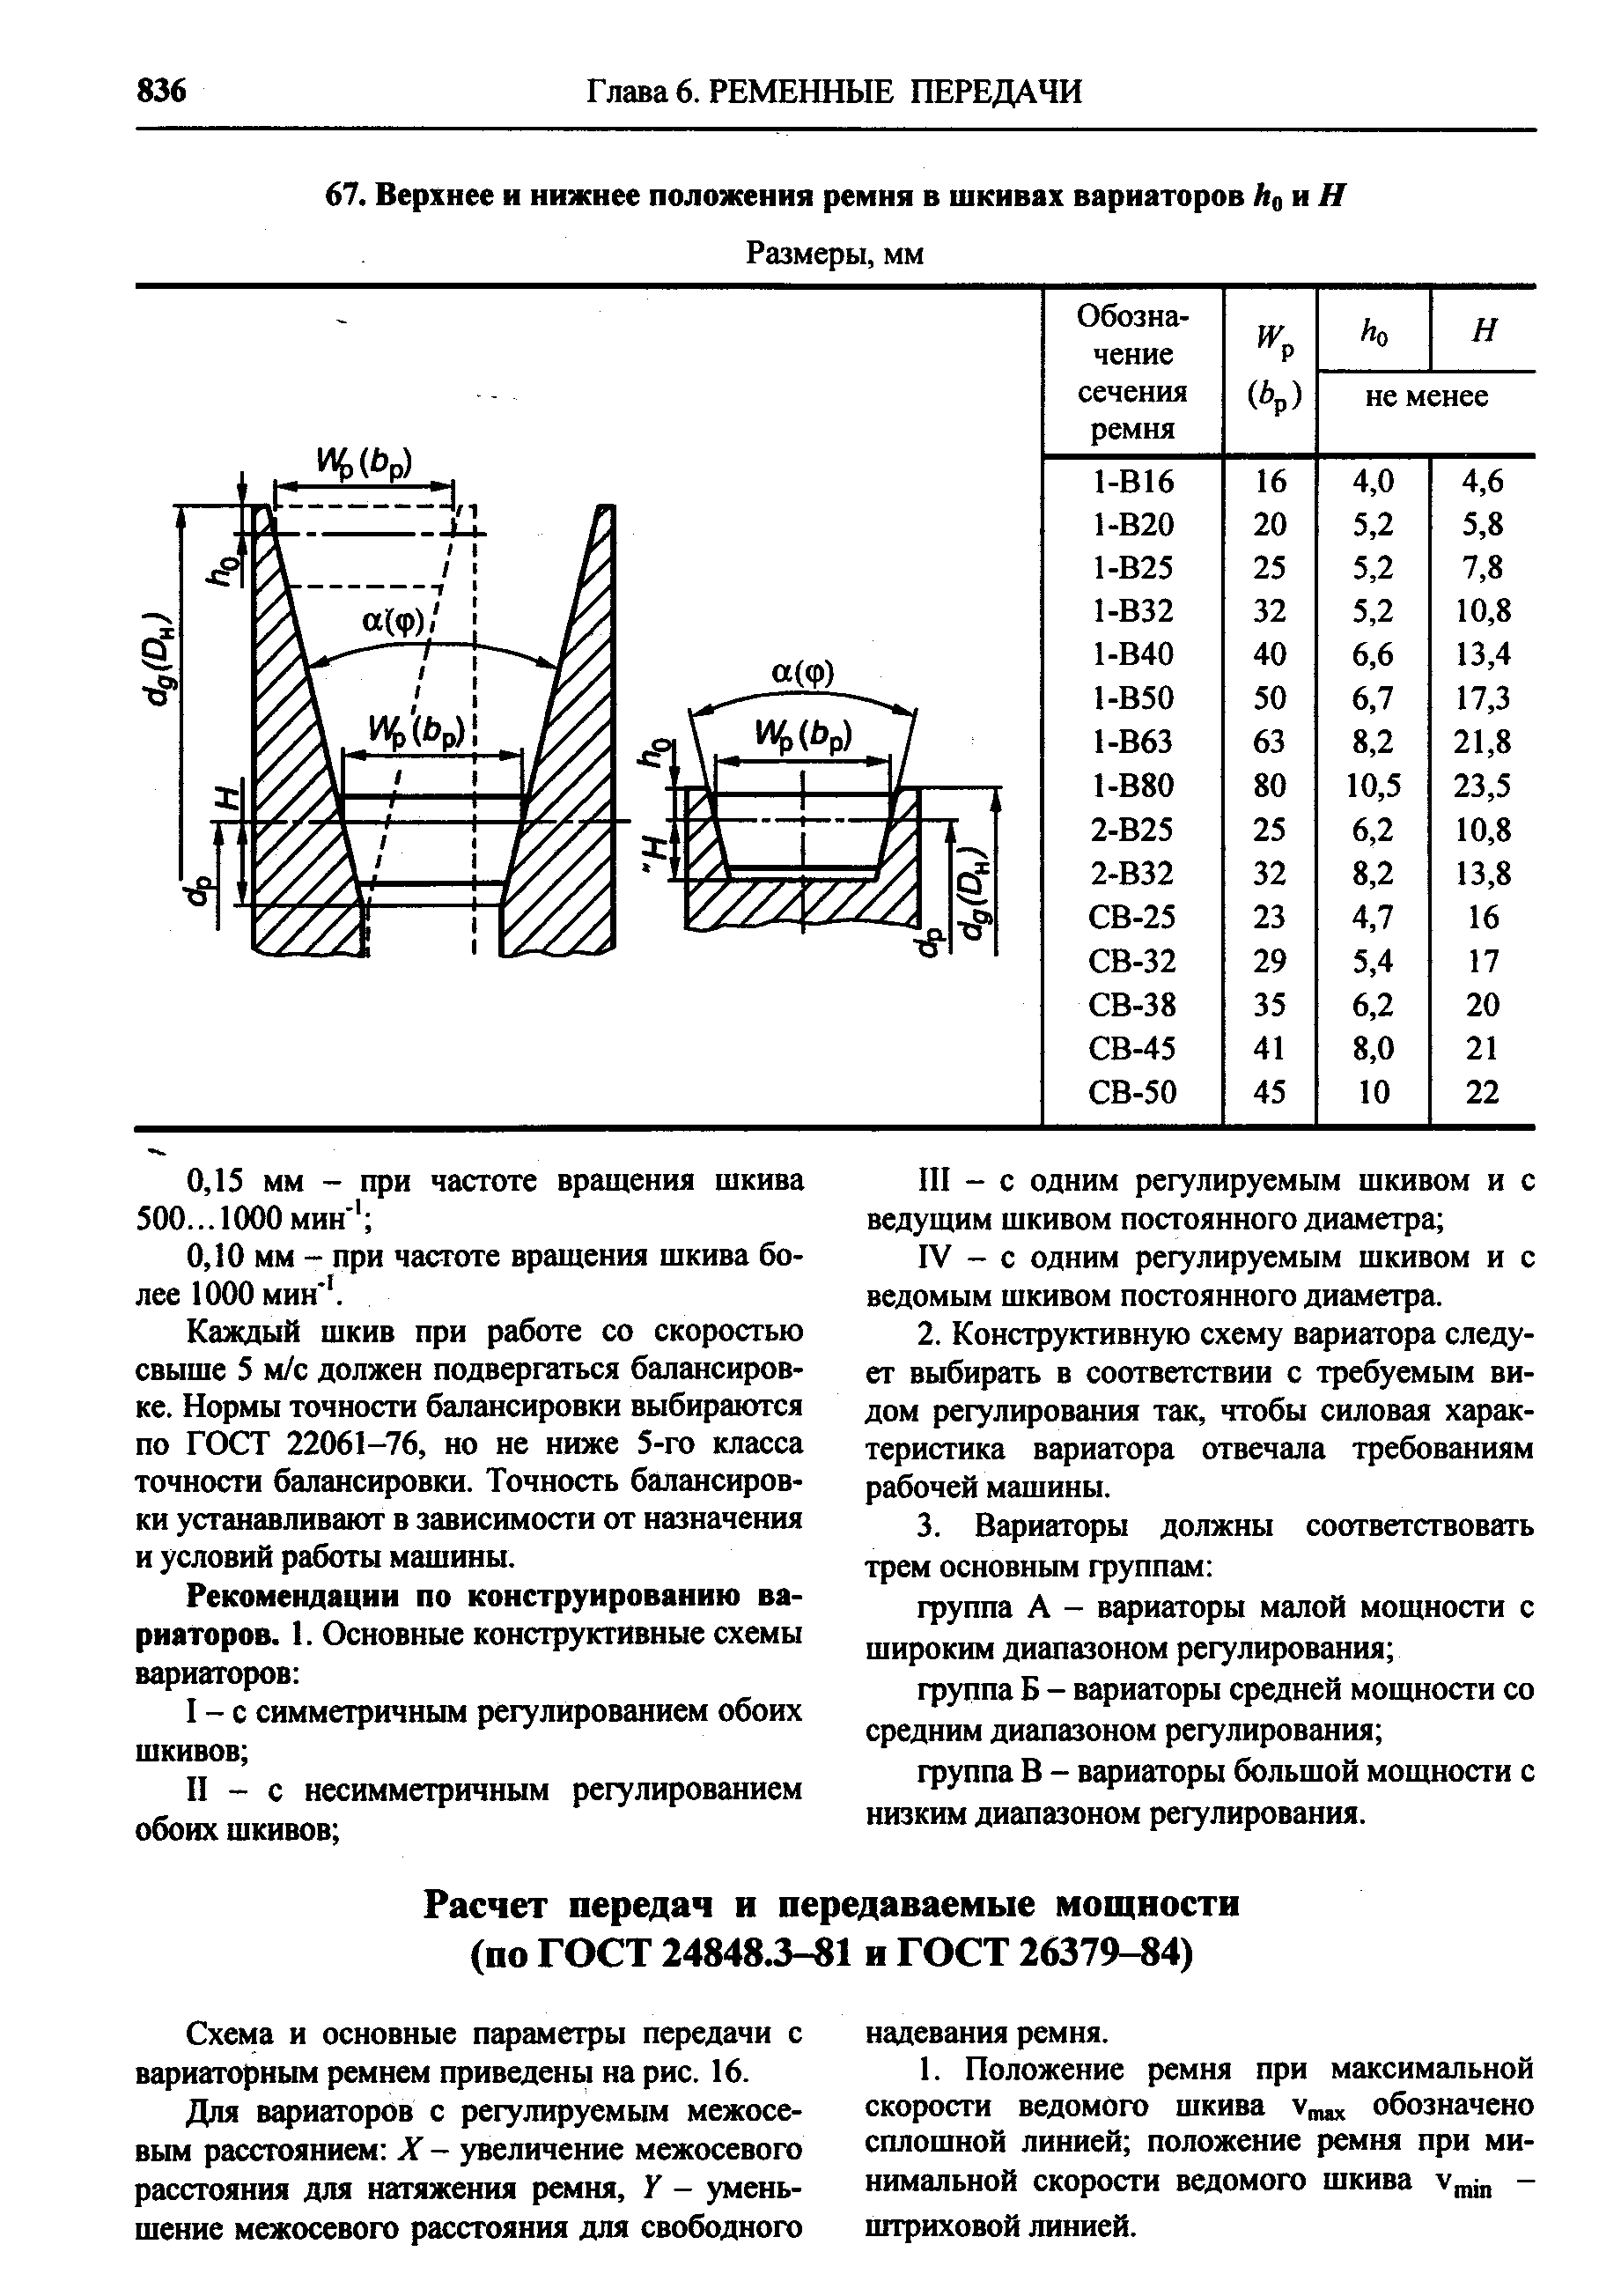 Схема и основные параметры передачи с вариаторным ремнем приведены на рис. 16.
